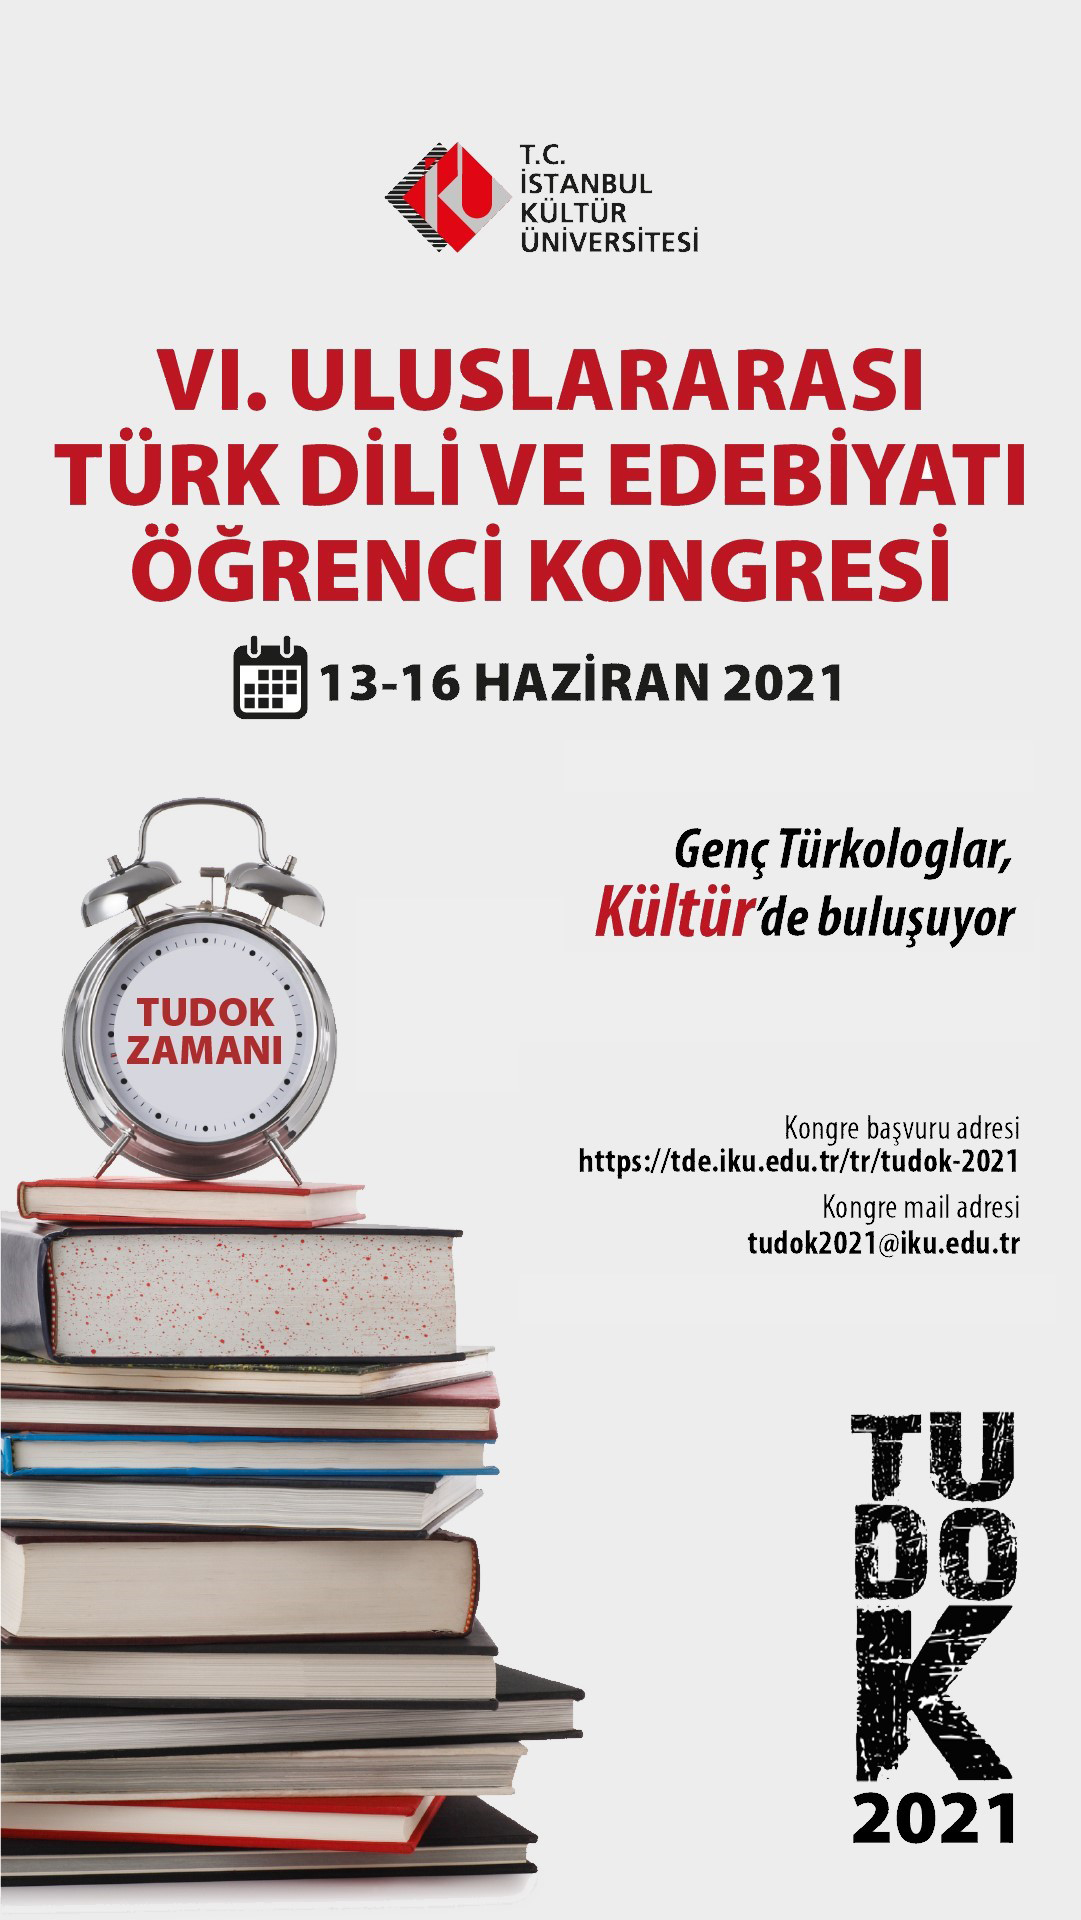 Uluslararası Türk Dili ve Edebiyatı Öğrenci Kongresi